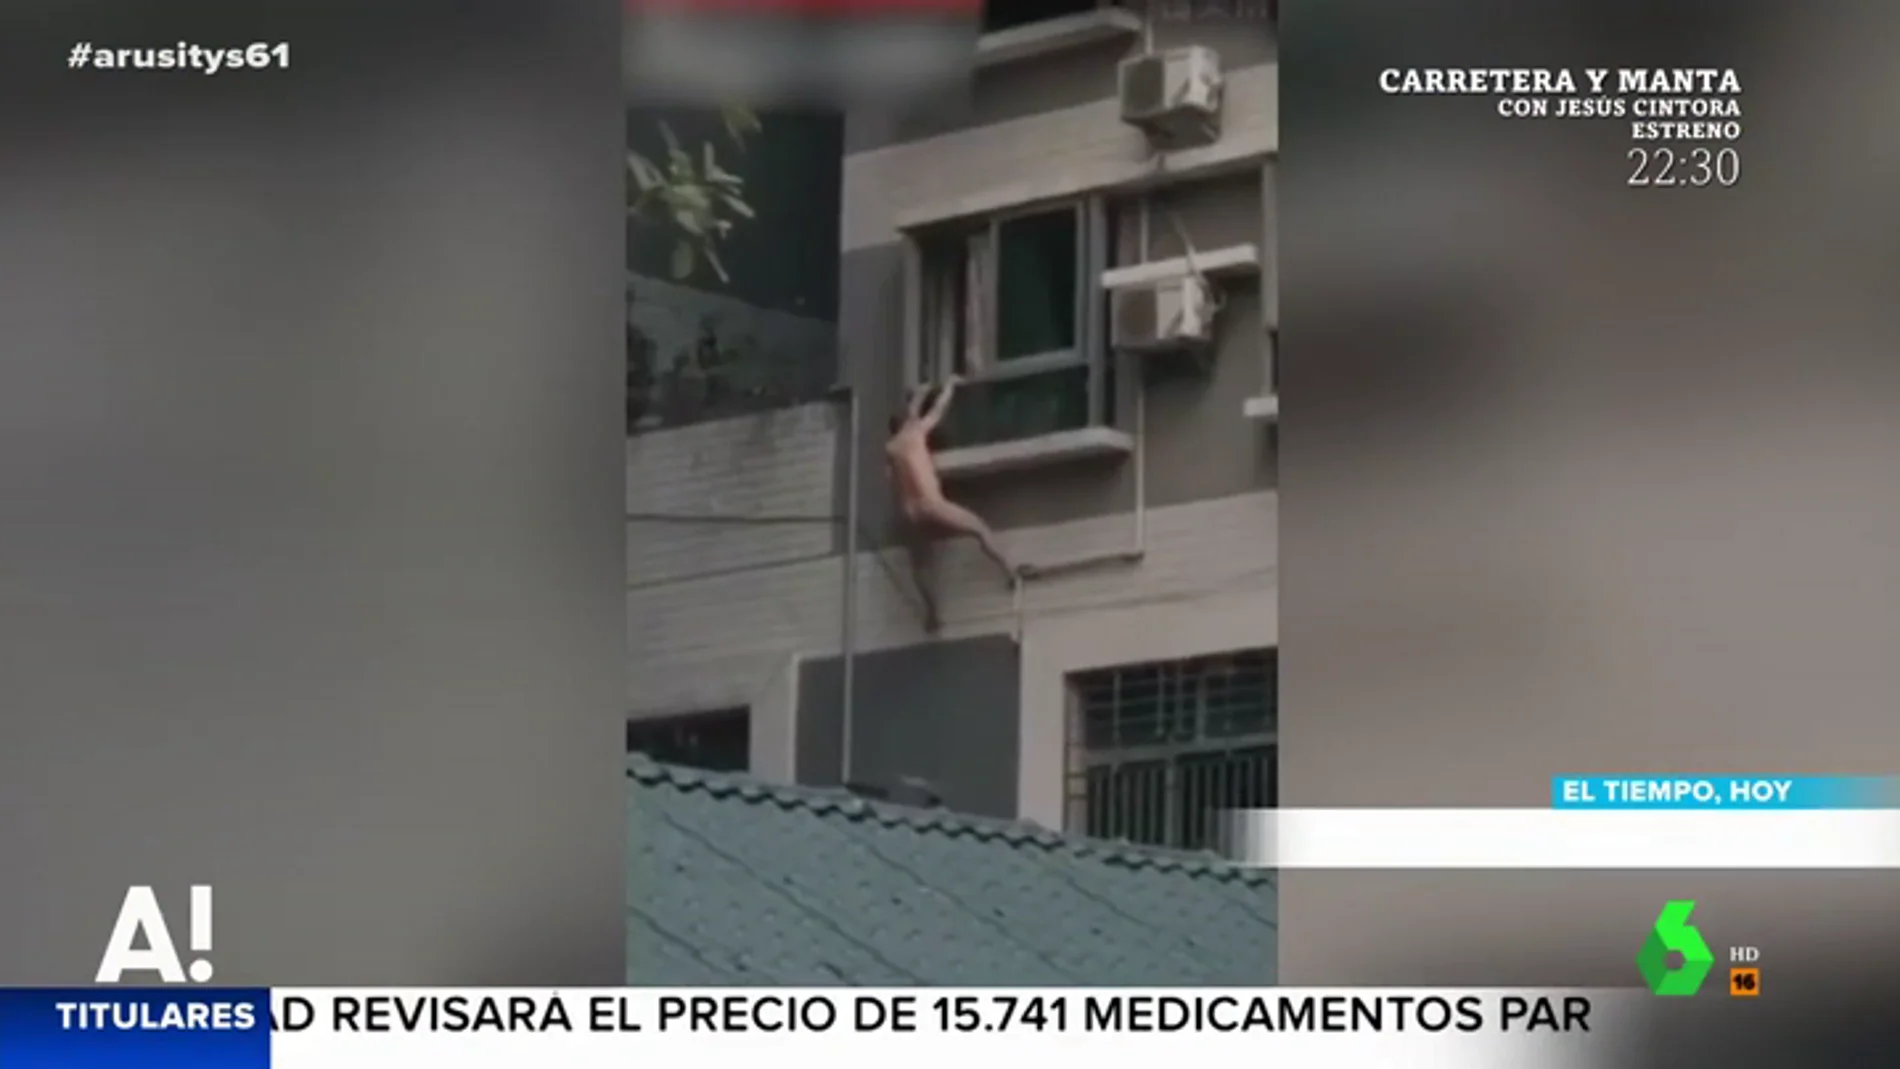 ARUSITYS - Un hombre desnudo cae por la ventana al intentar esconderse del  marido de su amante